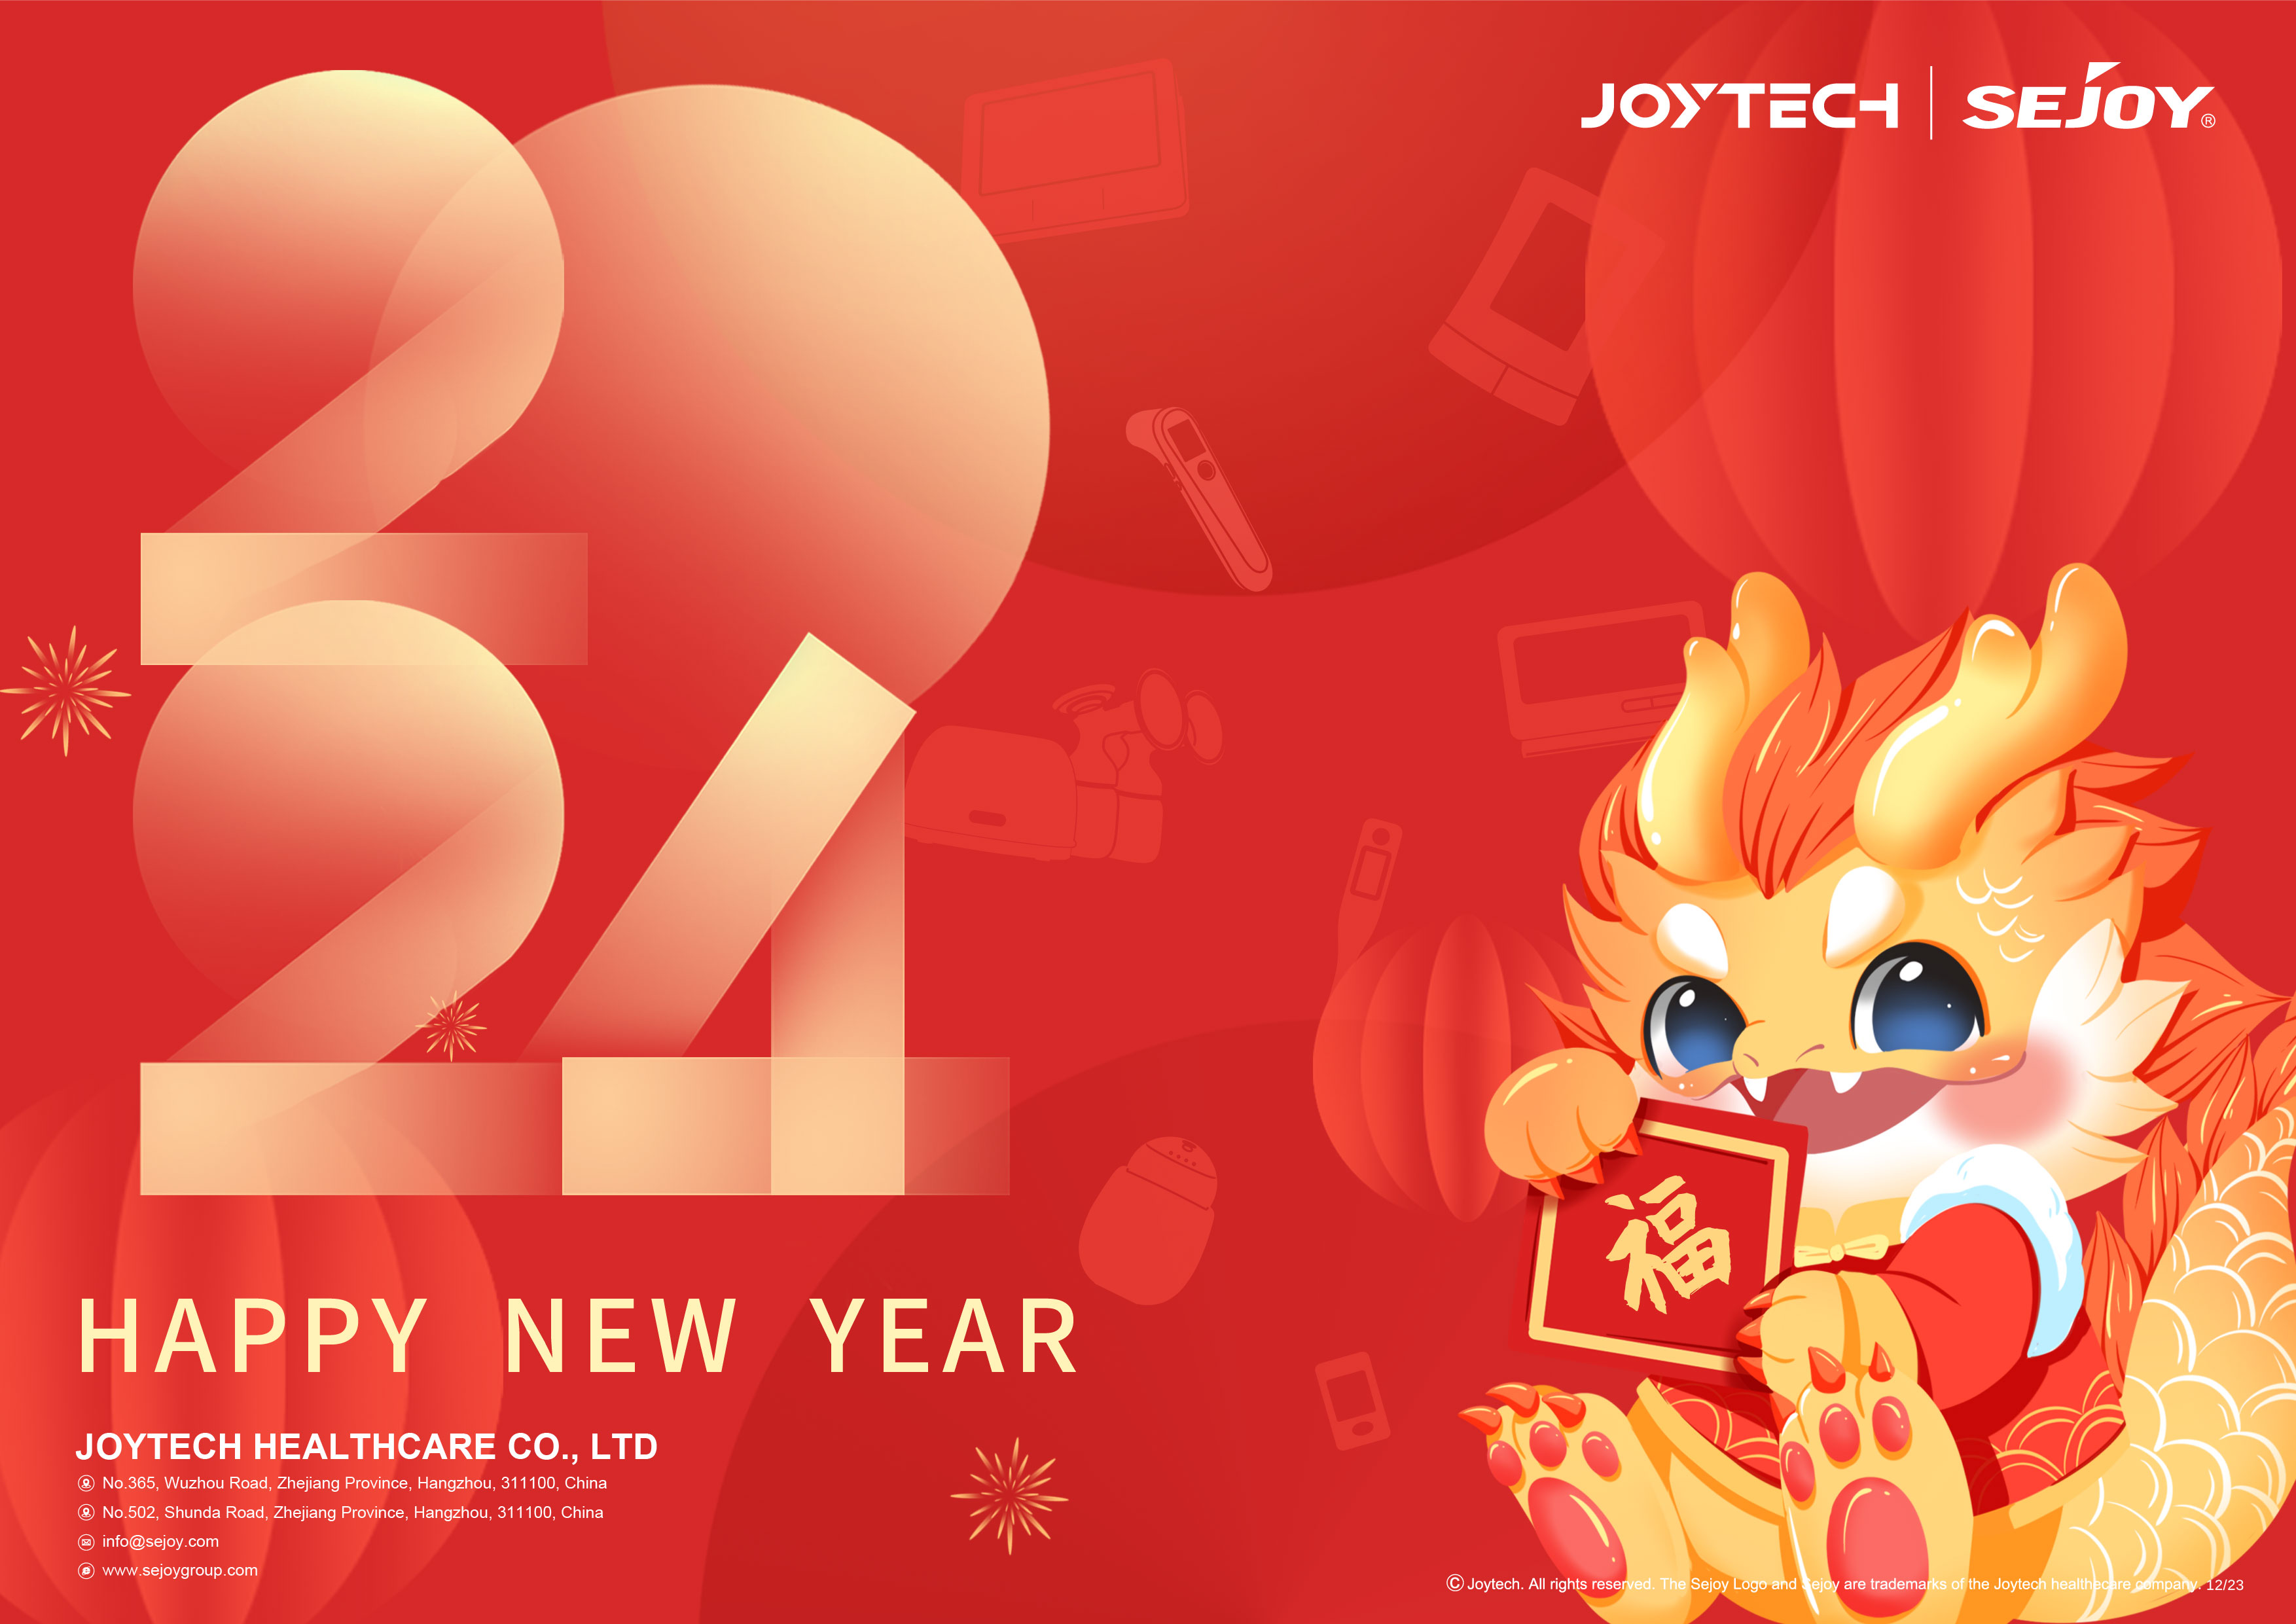 Aviso festivo del Festival de Primavera de Joytech: ¡Feliz año del Dragón, feliz todos los días!